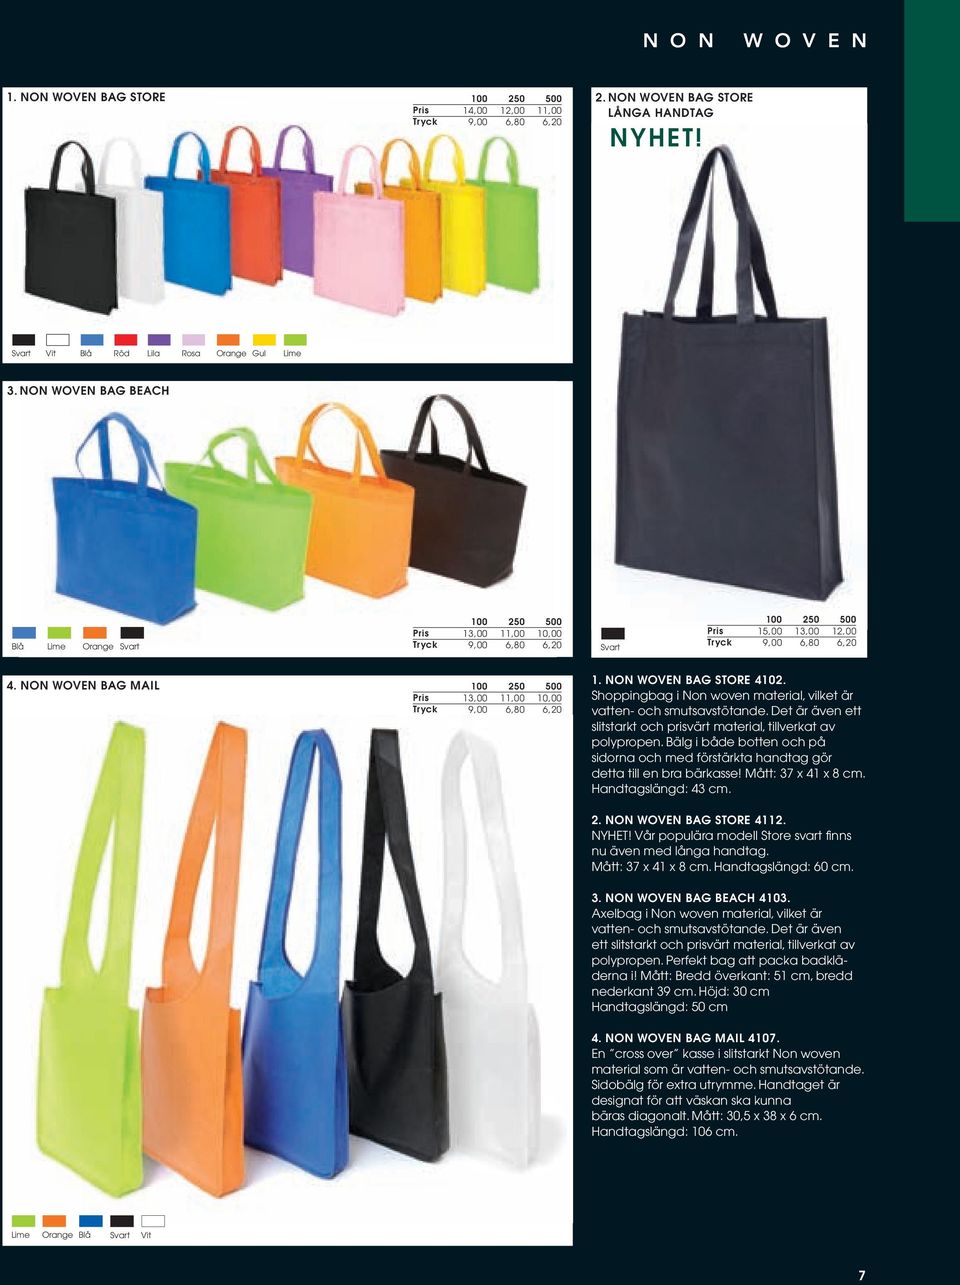 Shoppingbag i Non woven material, vilket är vatten- och smutsavstötande. Det är även ett slitstarkt och prisvärt material, tillverkat av polypropen.